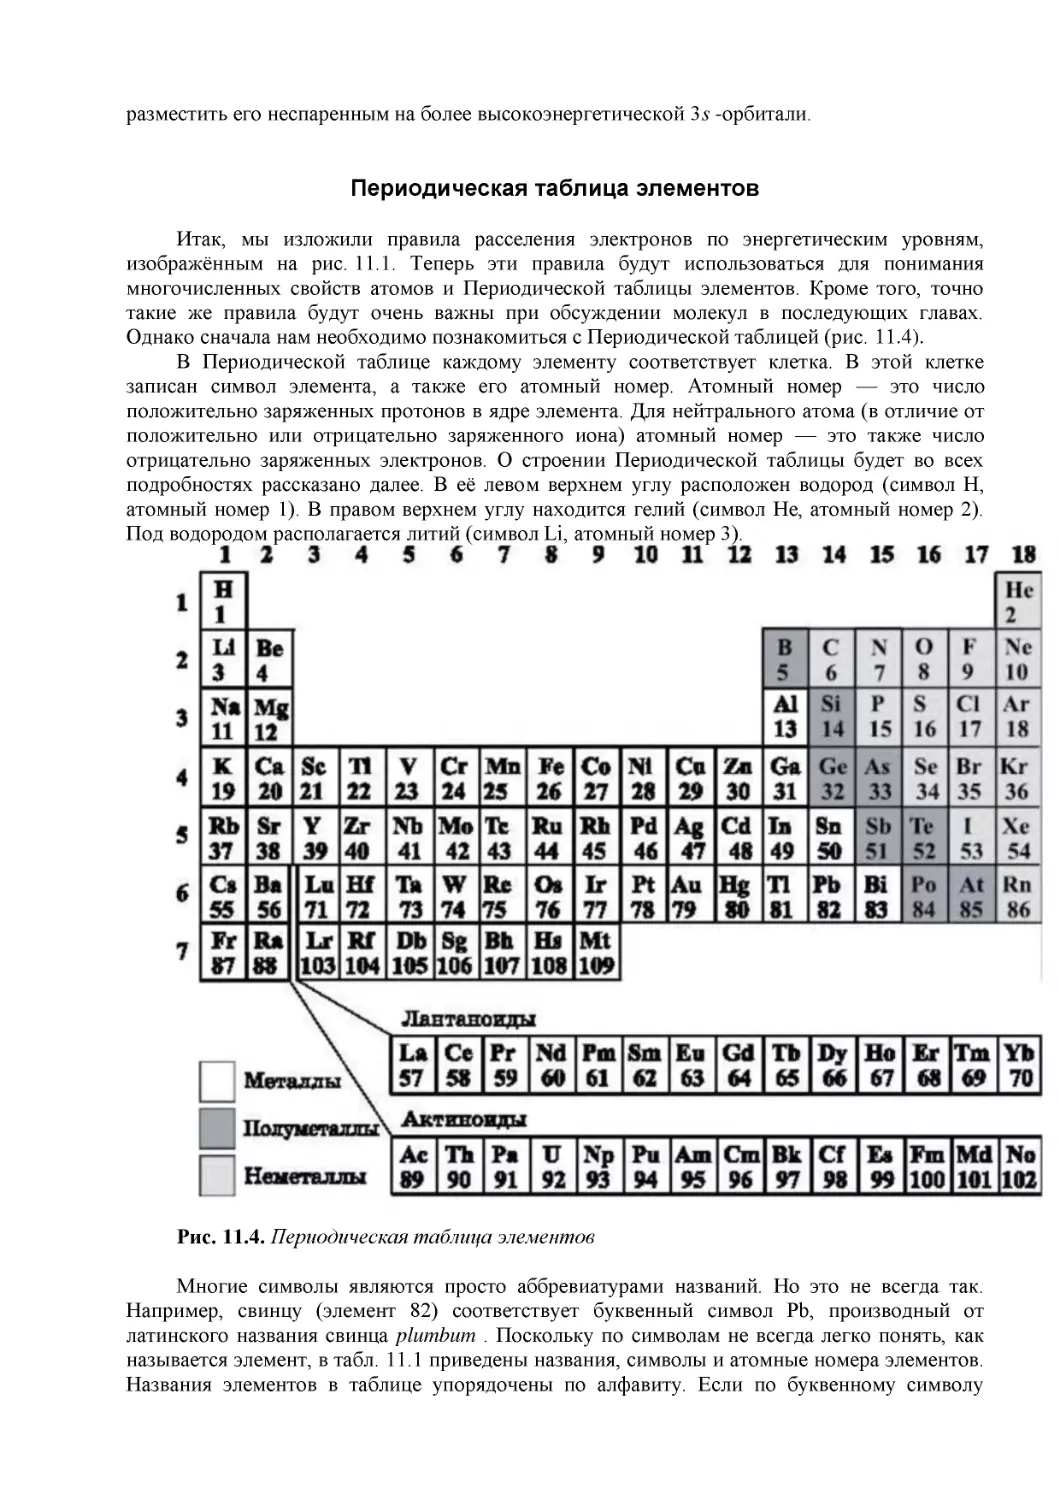 Периодическая таблица элементов